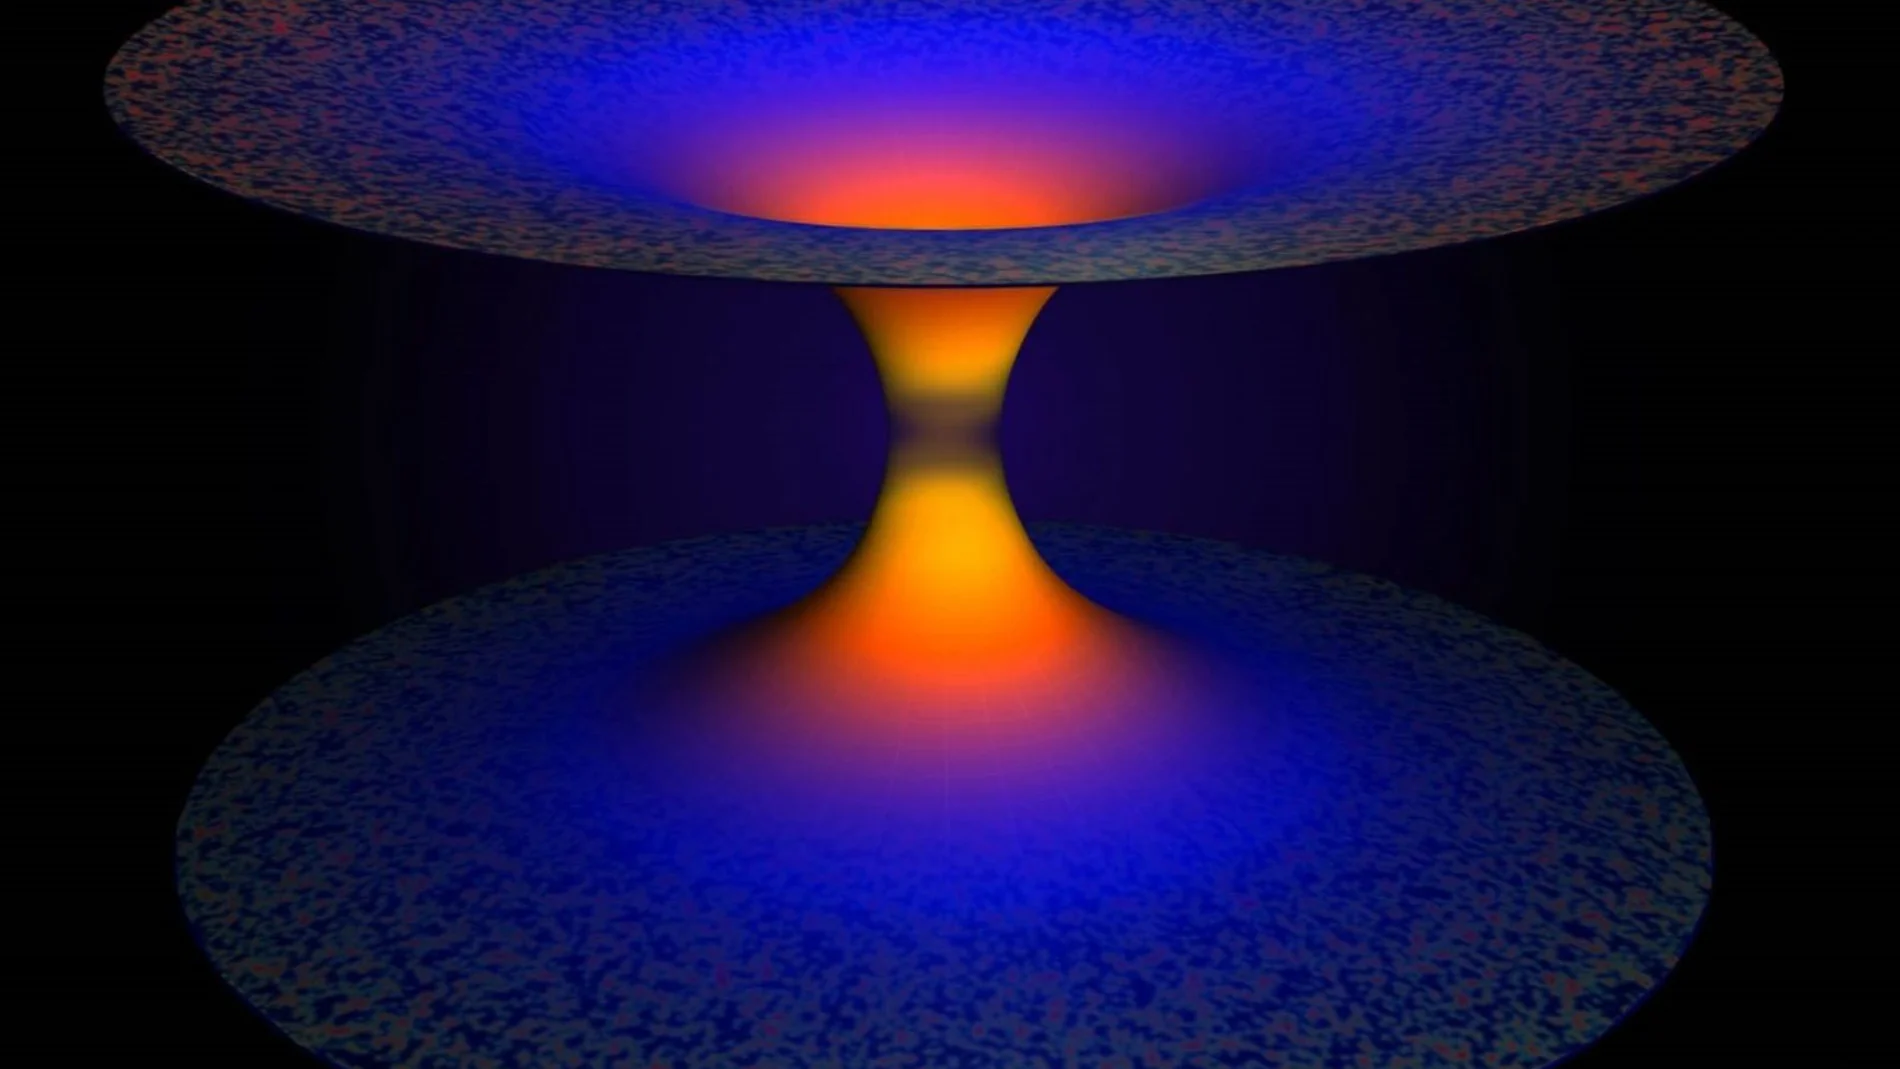 Representación artística de los efectos de gravedad cuántica de bucle en un agujero negro. La mitad inferior de la imagen muestra el agujero negro que, según la relatividad general, atrapa todo, incluida la luz. La gravedad cuántica de bucles, una teoría que extiende la relatividad general de Einstein utilizando la mecánica cuántica, supera este tremendo impulso y libera todo lo que se muestra en la mitad superior de la imagen, resolviendo así el problema fundamental de la singularidad del agujero negro. Crédito: A. Corichi y JP Ruiz. LSU.